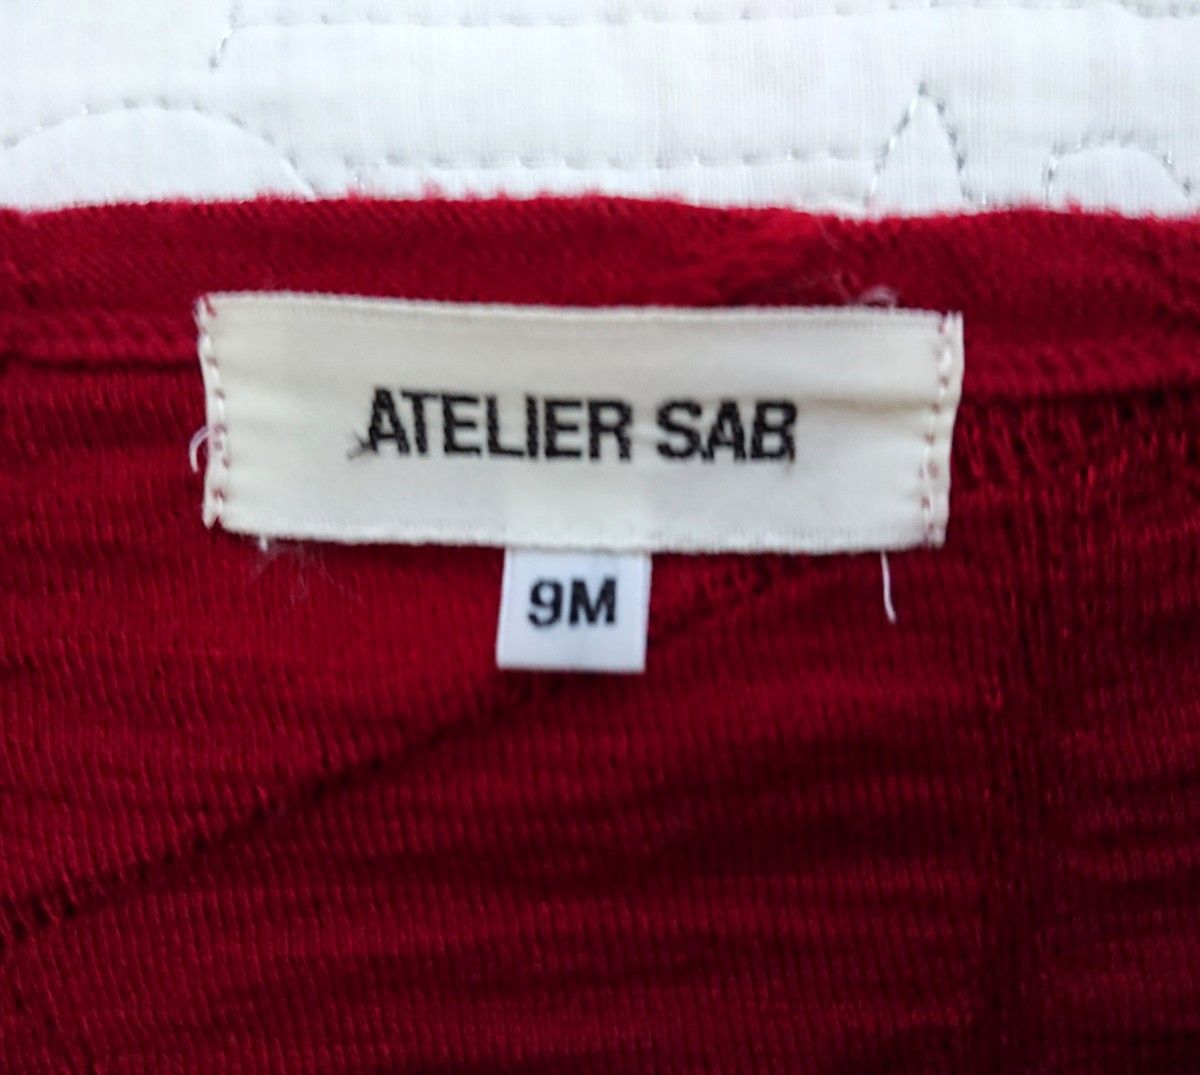 ATELIER SAB アトリエサブ カットソー 6分袖 折り柄 赤 ジャケットインナーTシャツ